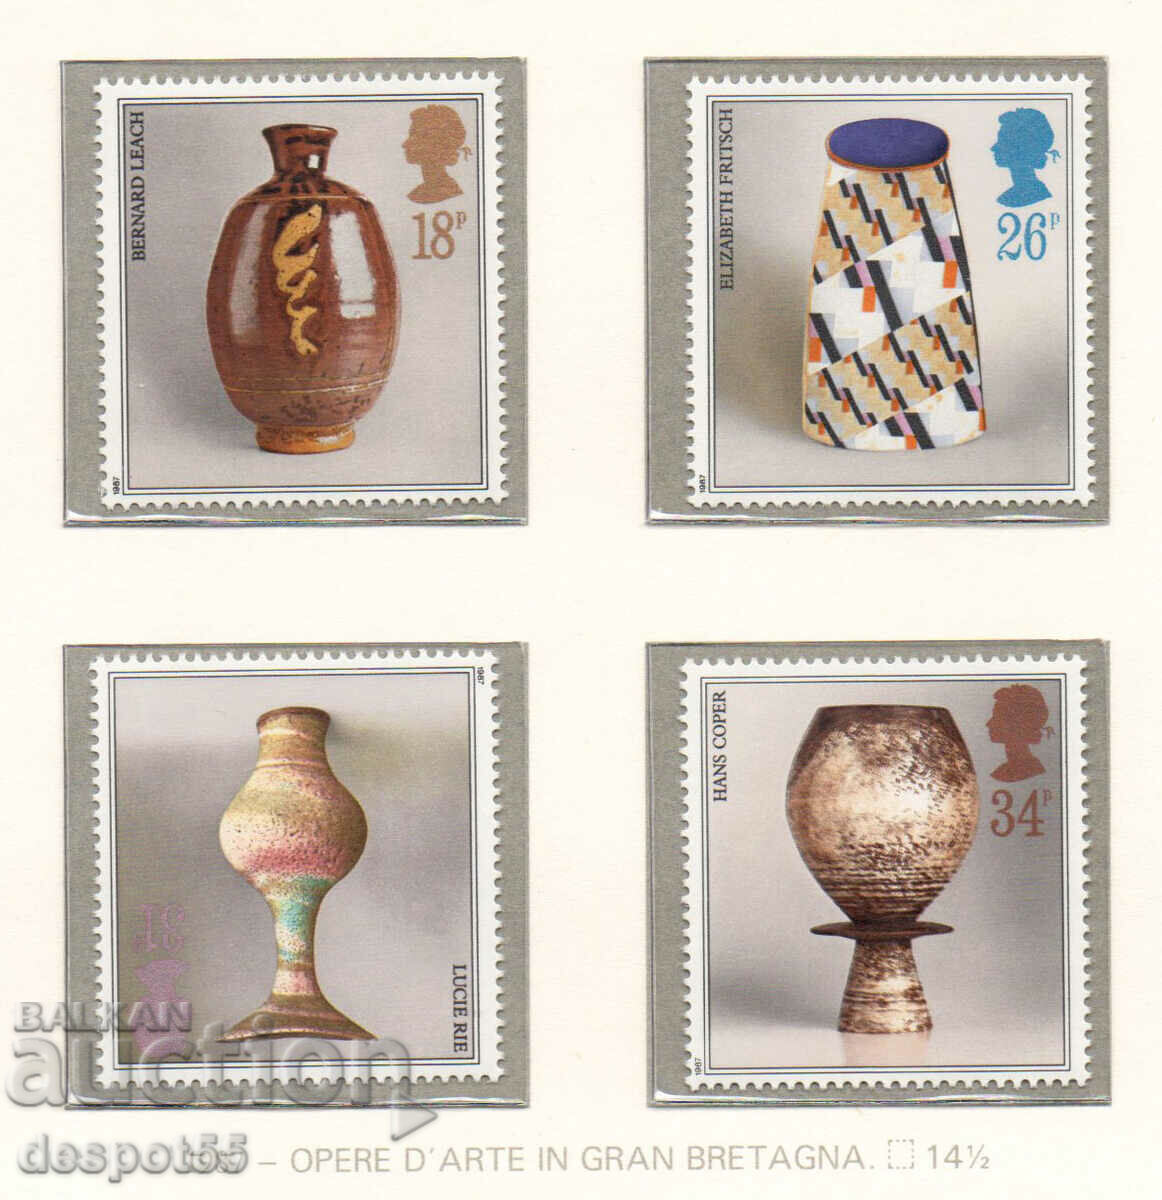 1987. Great Britain. Studio Ceramics.